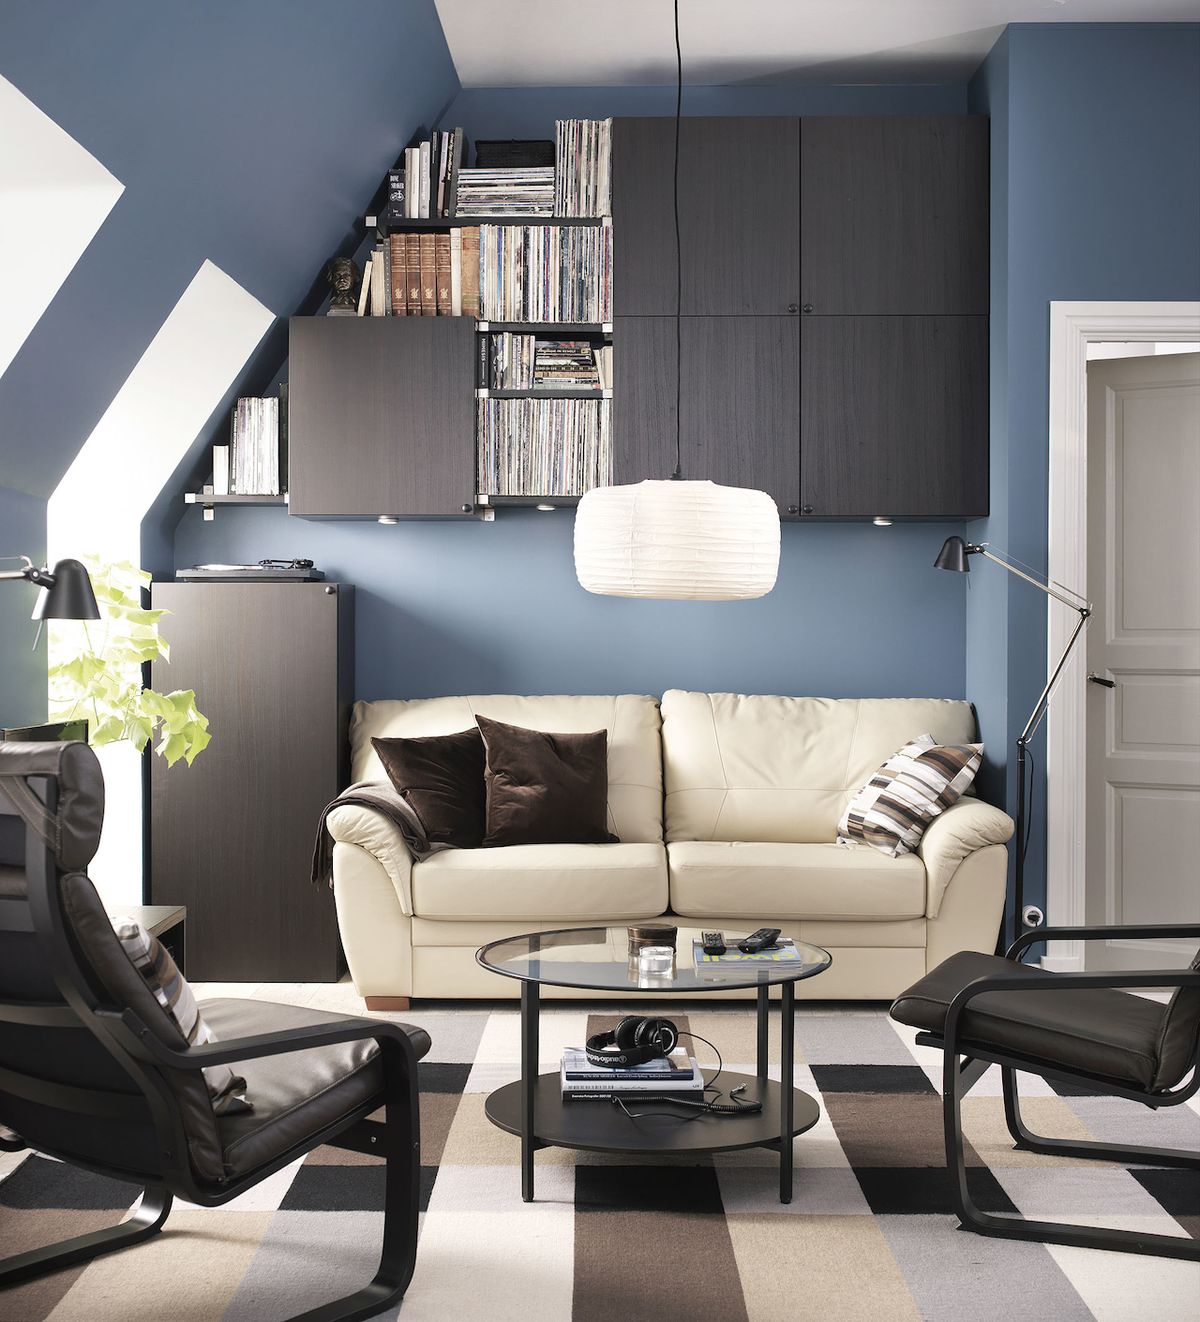 Modré stěna povzbuzují k práci a soustředění, kontrast antracitové černé s bílou jim dodává hloubku.